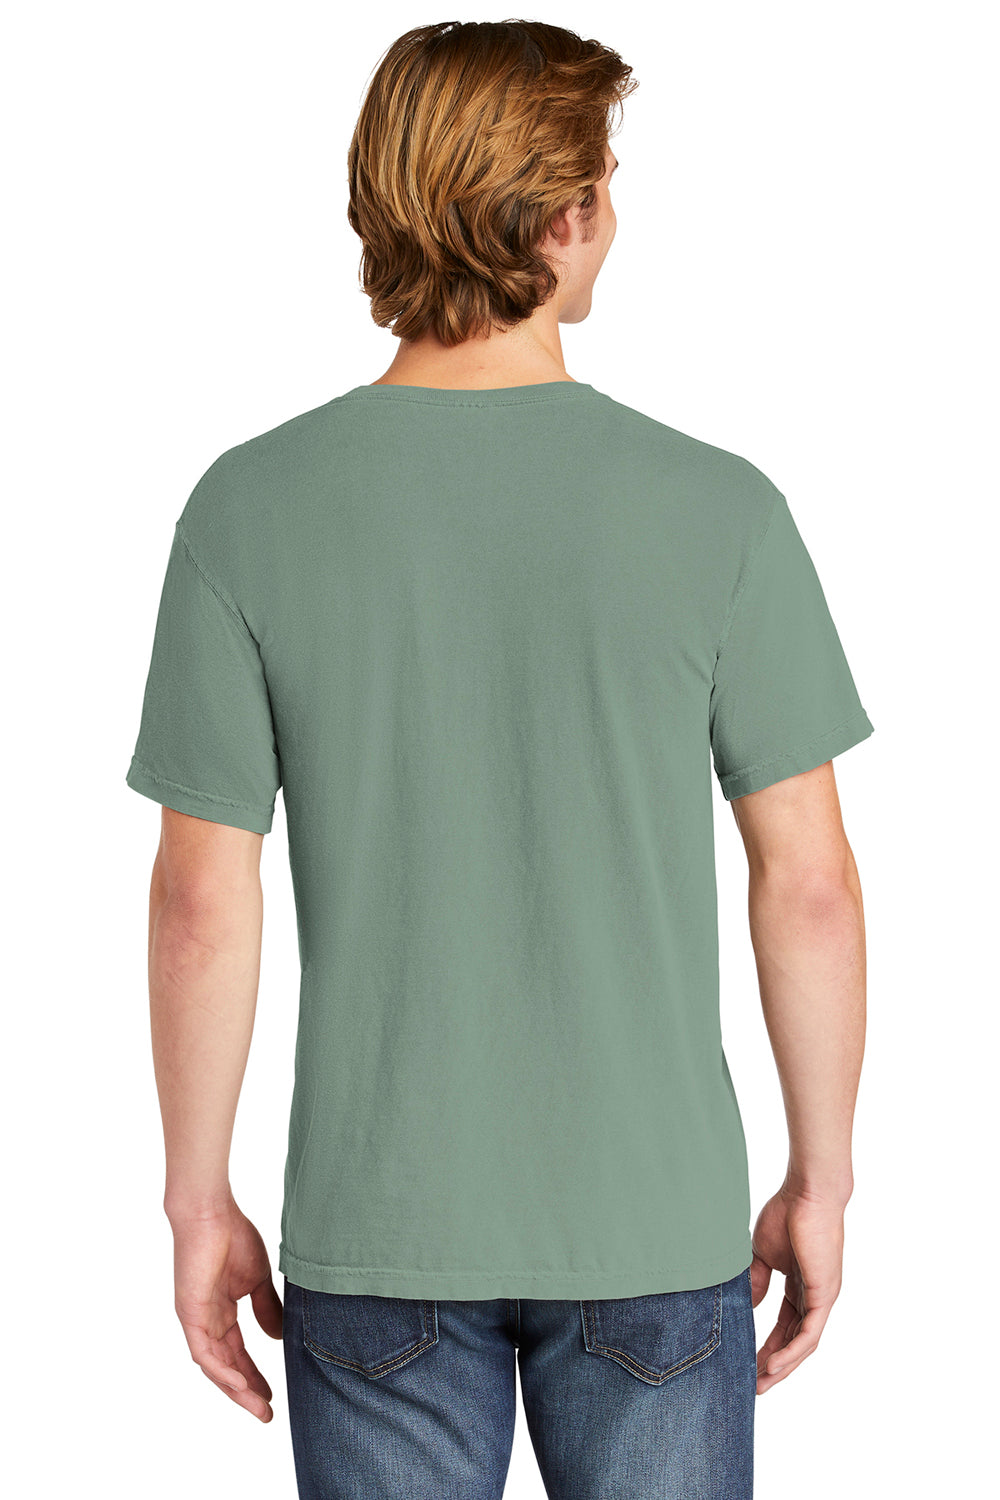 Comfort Colors 6030/6030CC Mens Short Sleeve Crewneck T-Shirt w/ Pocket Bay Green Back